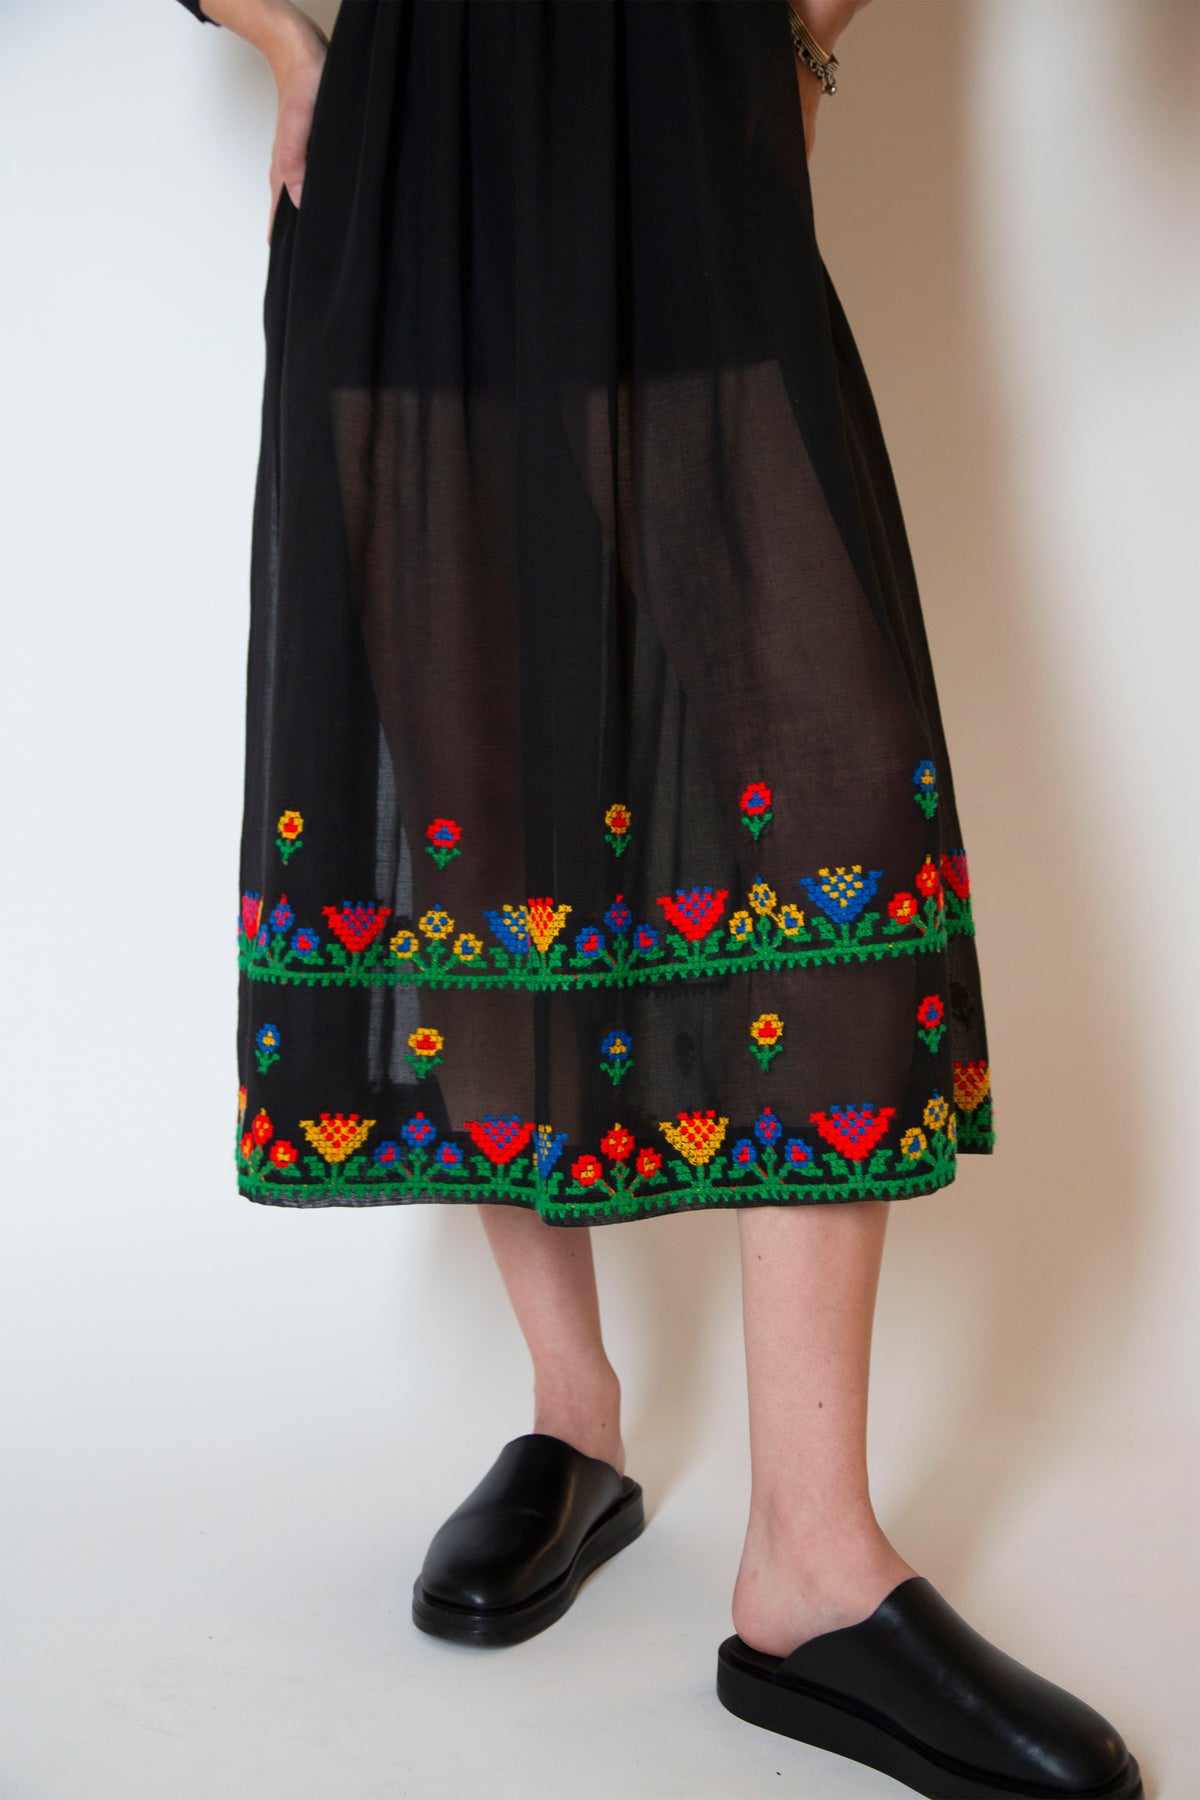 Vintage embroidered dress